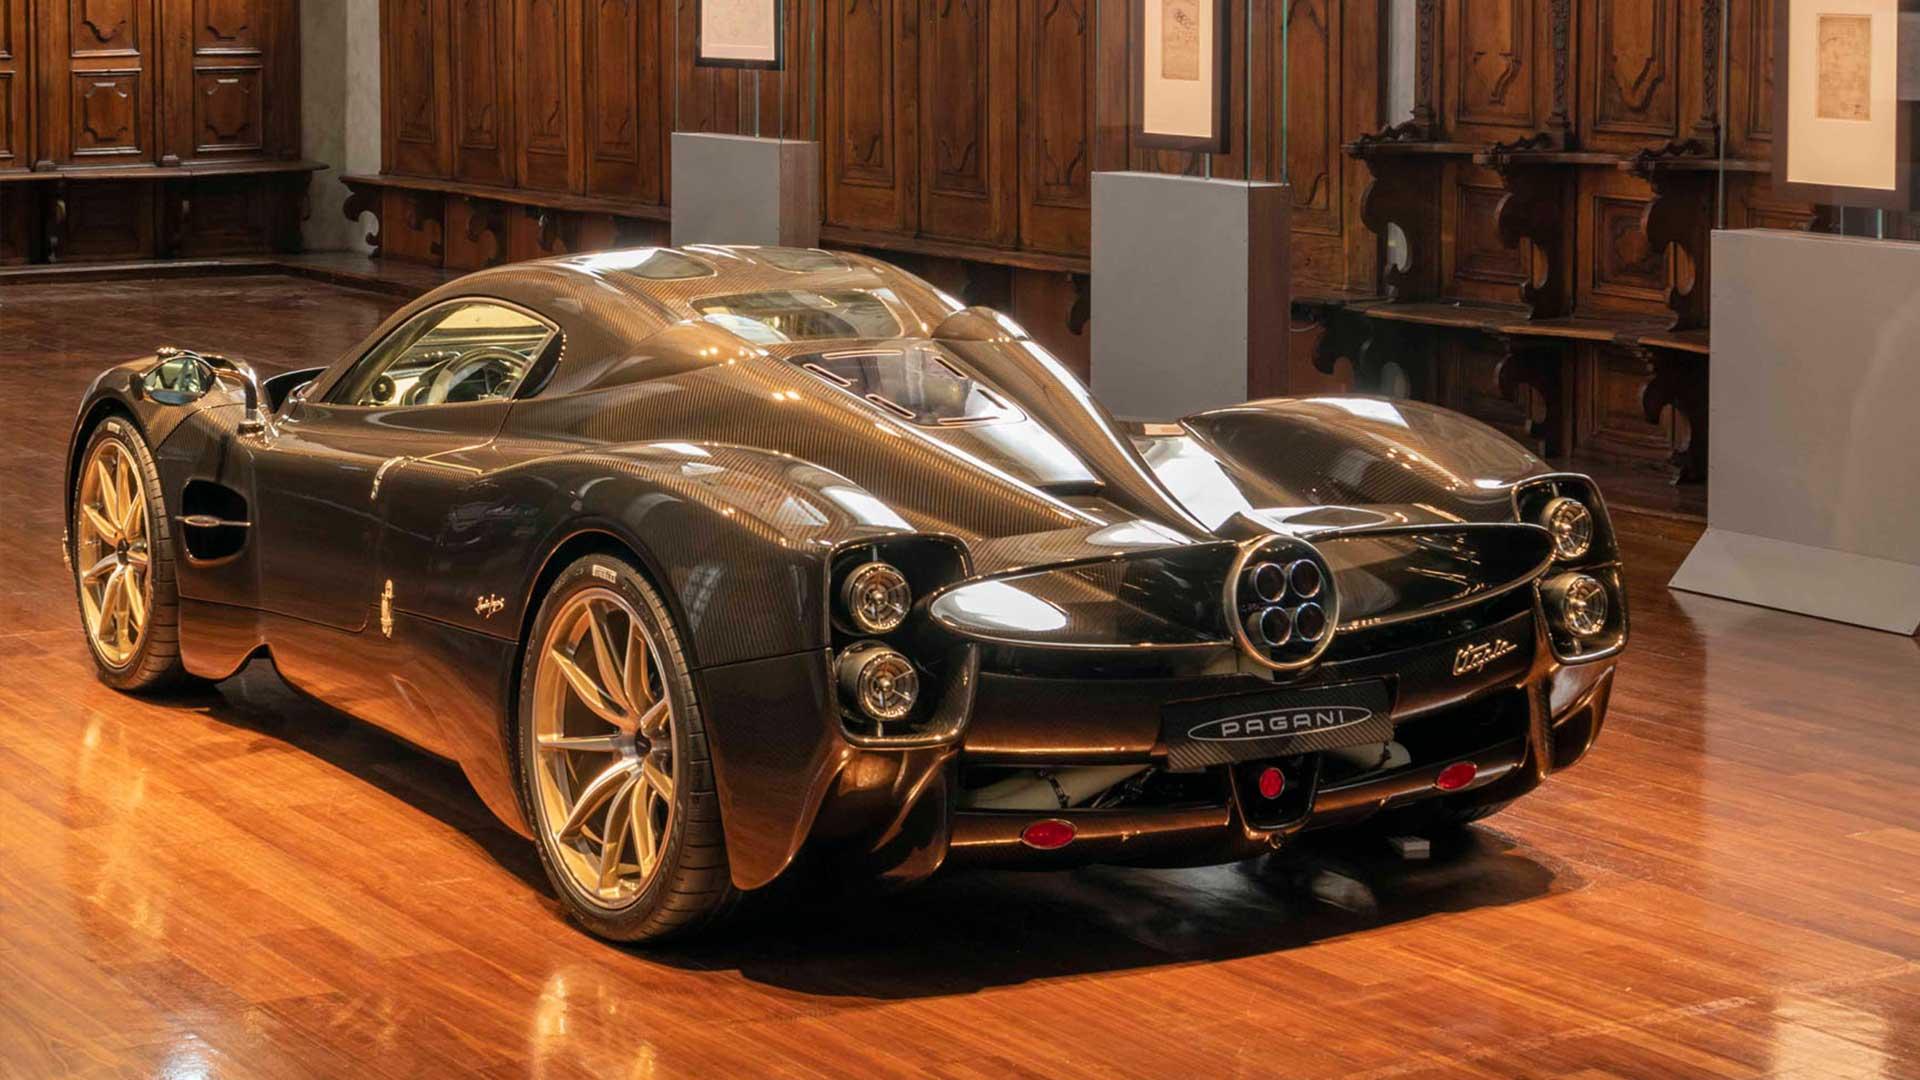 Pagani Utopia carbon fiber in the rear museum